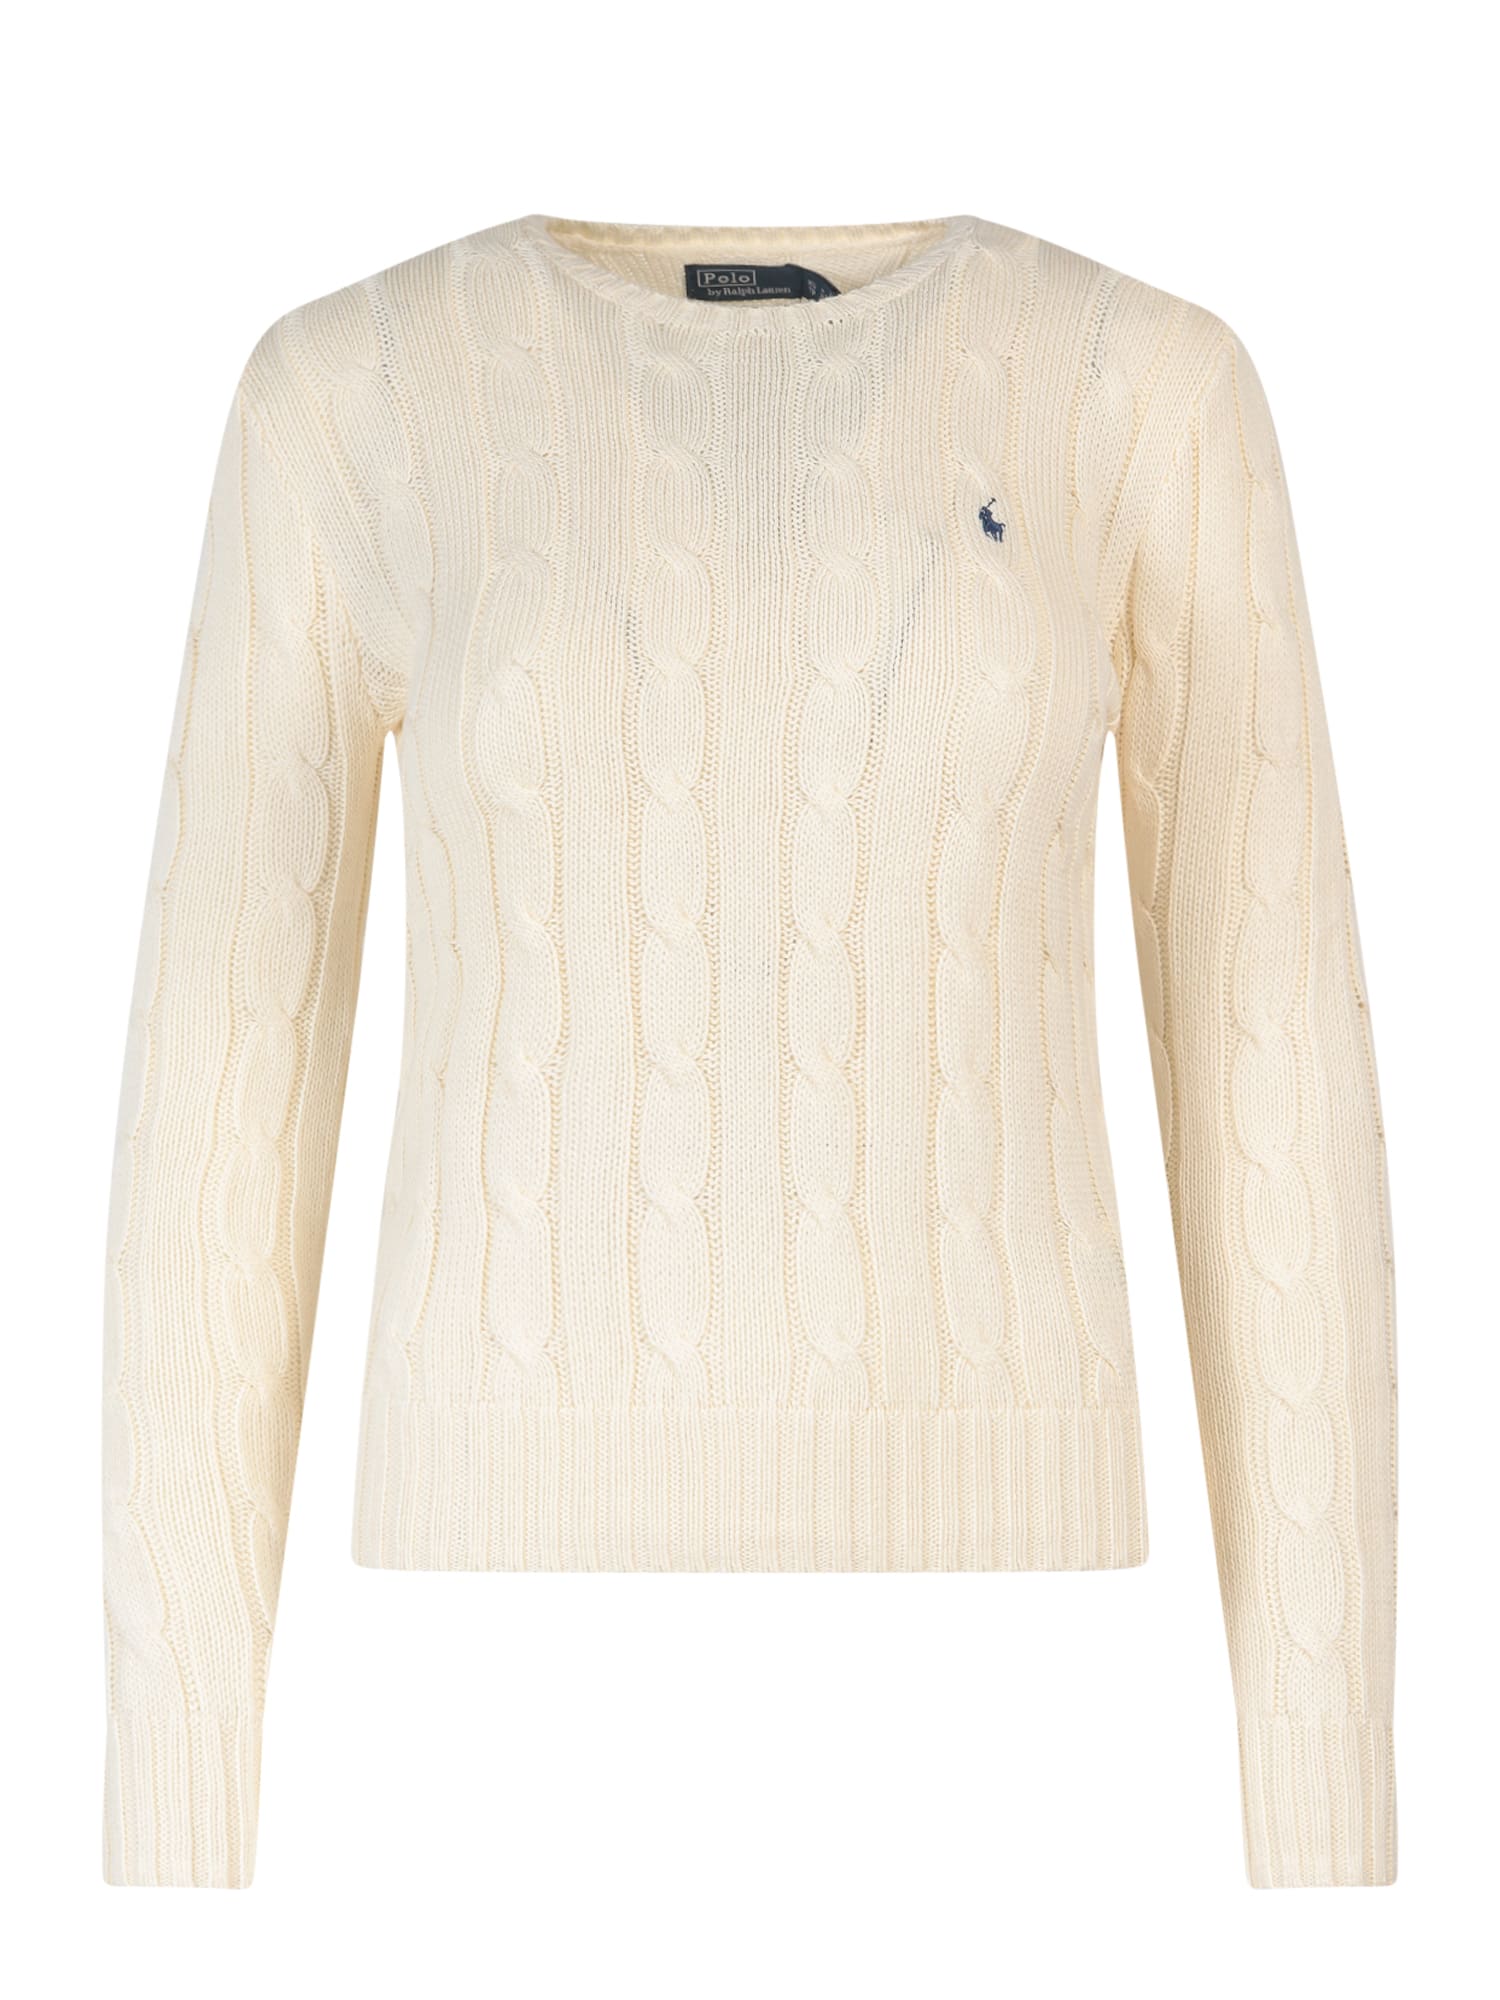 Ralph Lauren Sweater In Cream